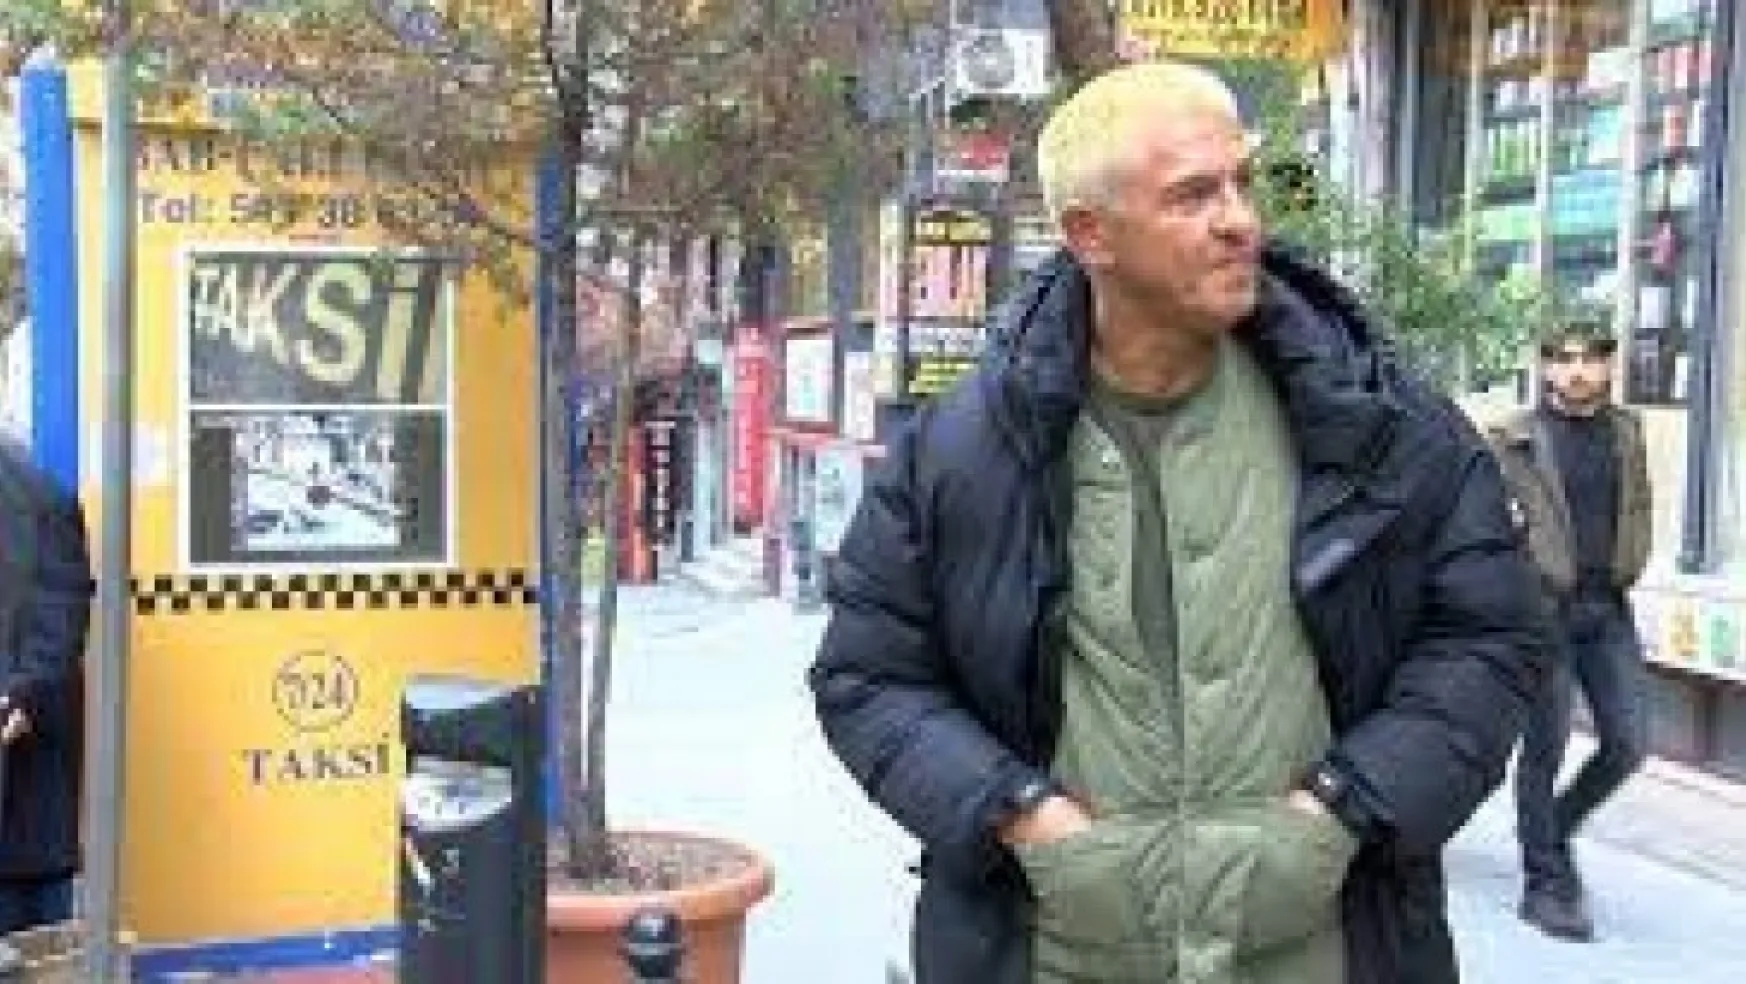 Taksi filminin ünlü oyuncusu İstanbul'da taksi bulamadı